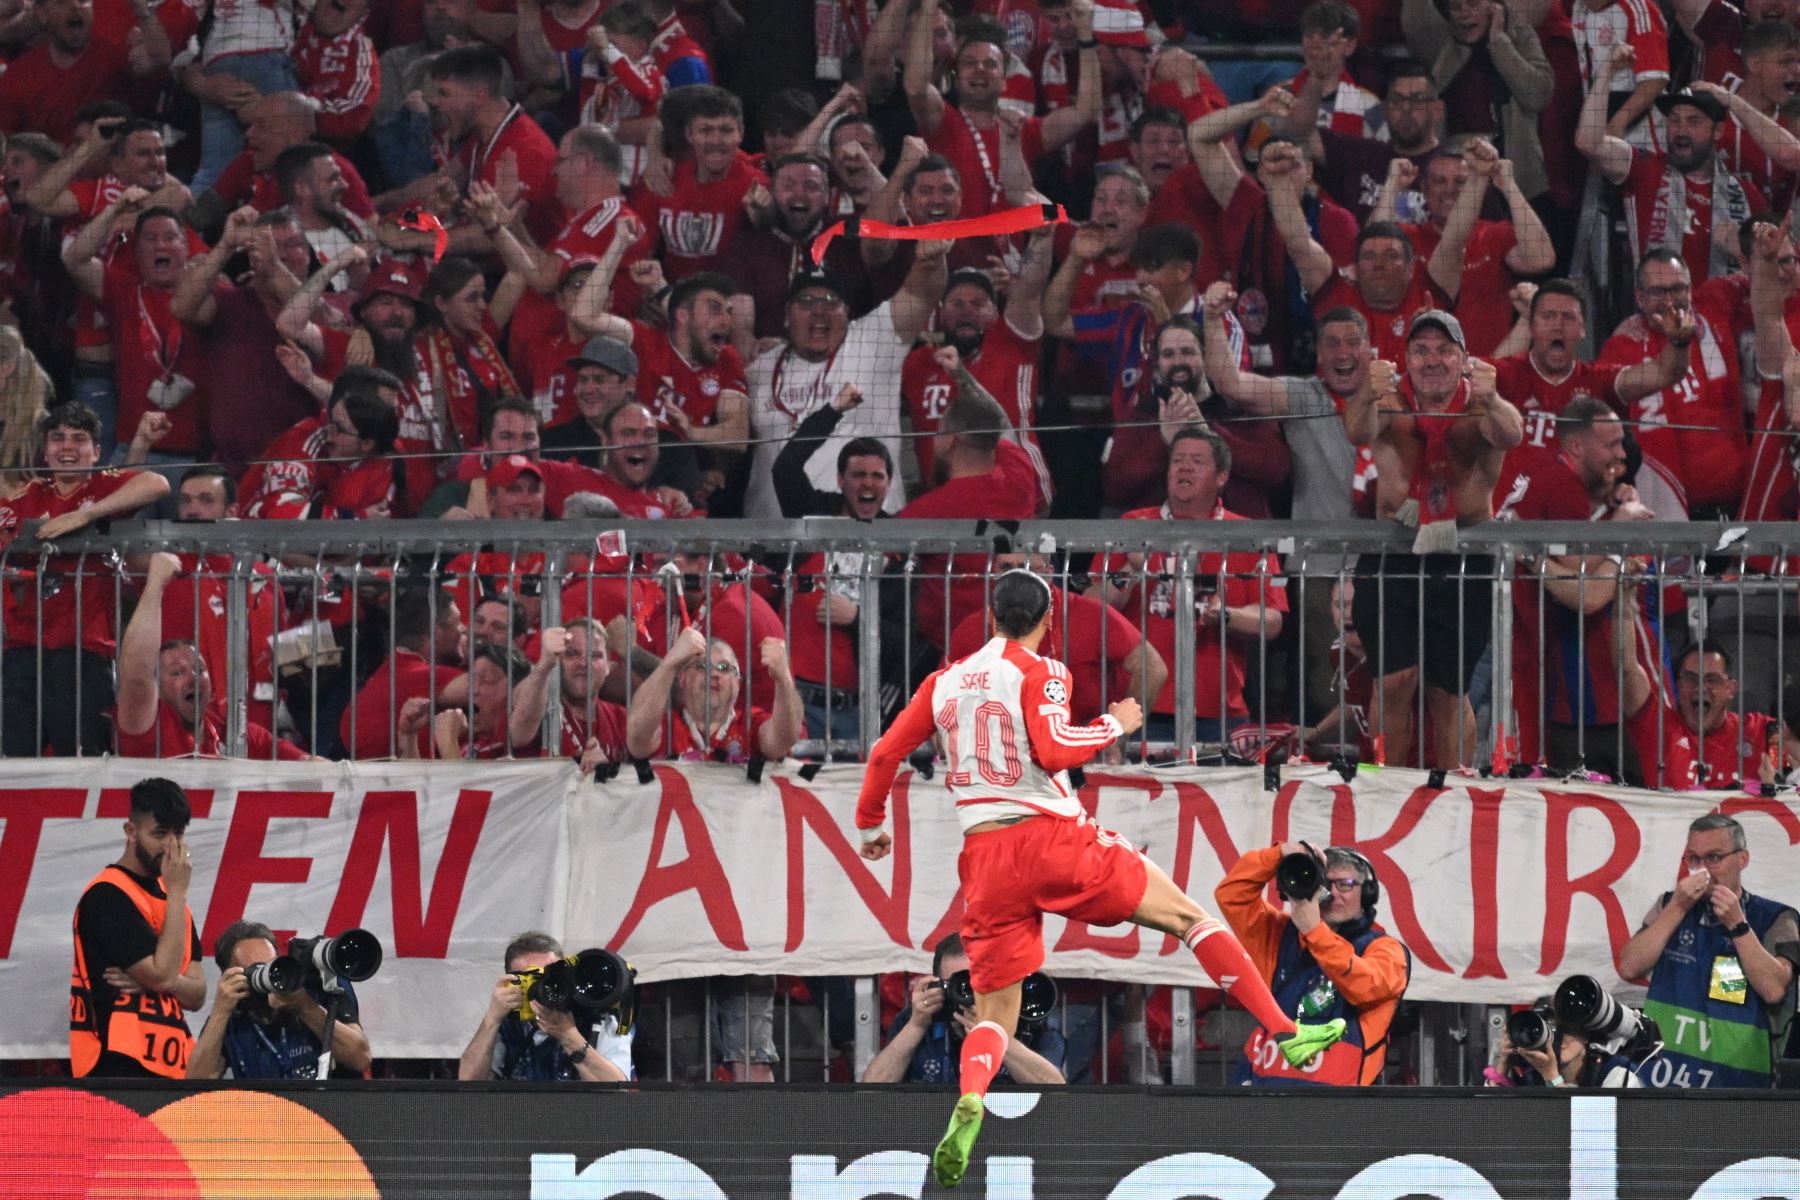 El delantero alemán del Bayern de Múnich, Leroy Sane, celebra el gol durante el partido de fútbol de ida de la semifinal de la Liga de Campeones de la UEFA entre el FC Bayern de Múnich y el Real Madrid CF.
Foto: AFP